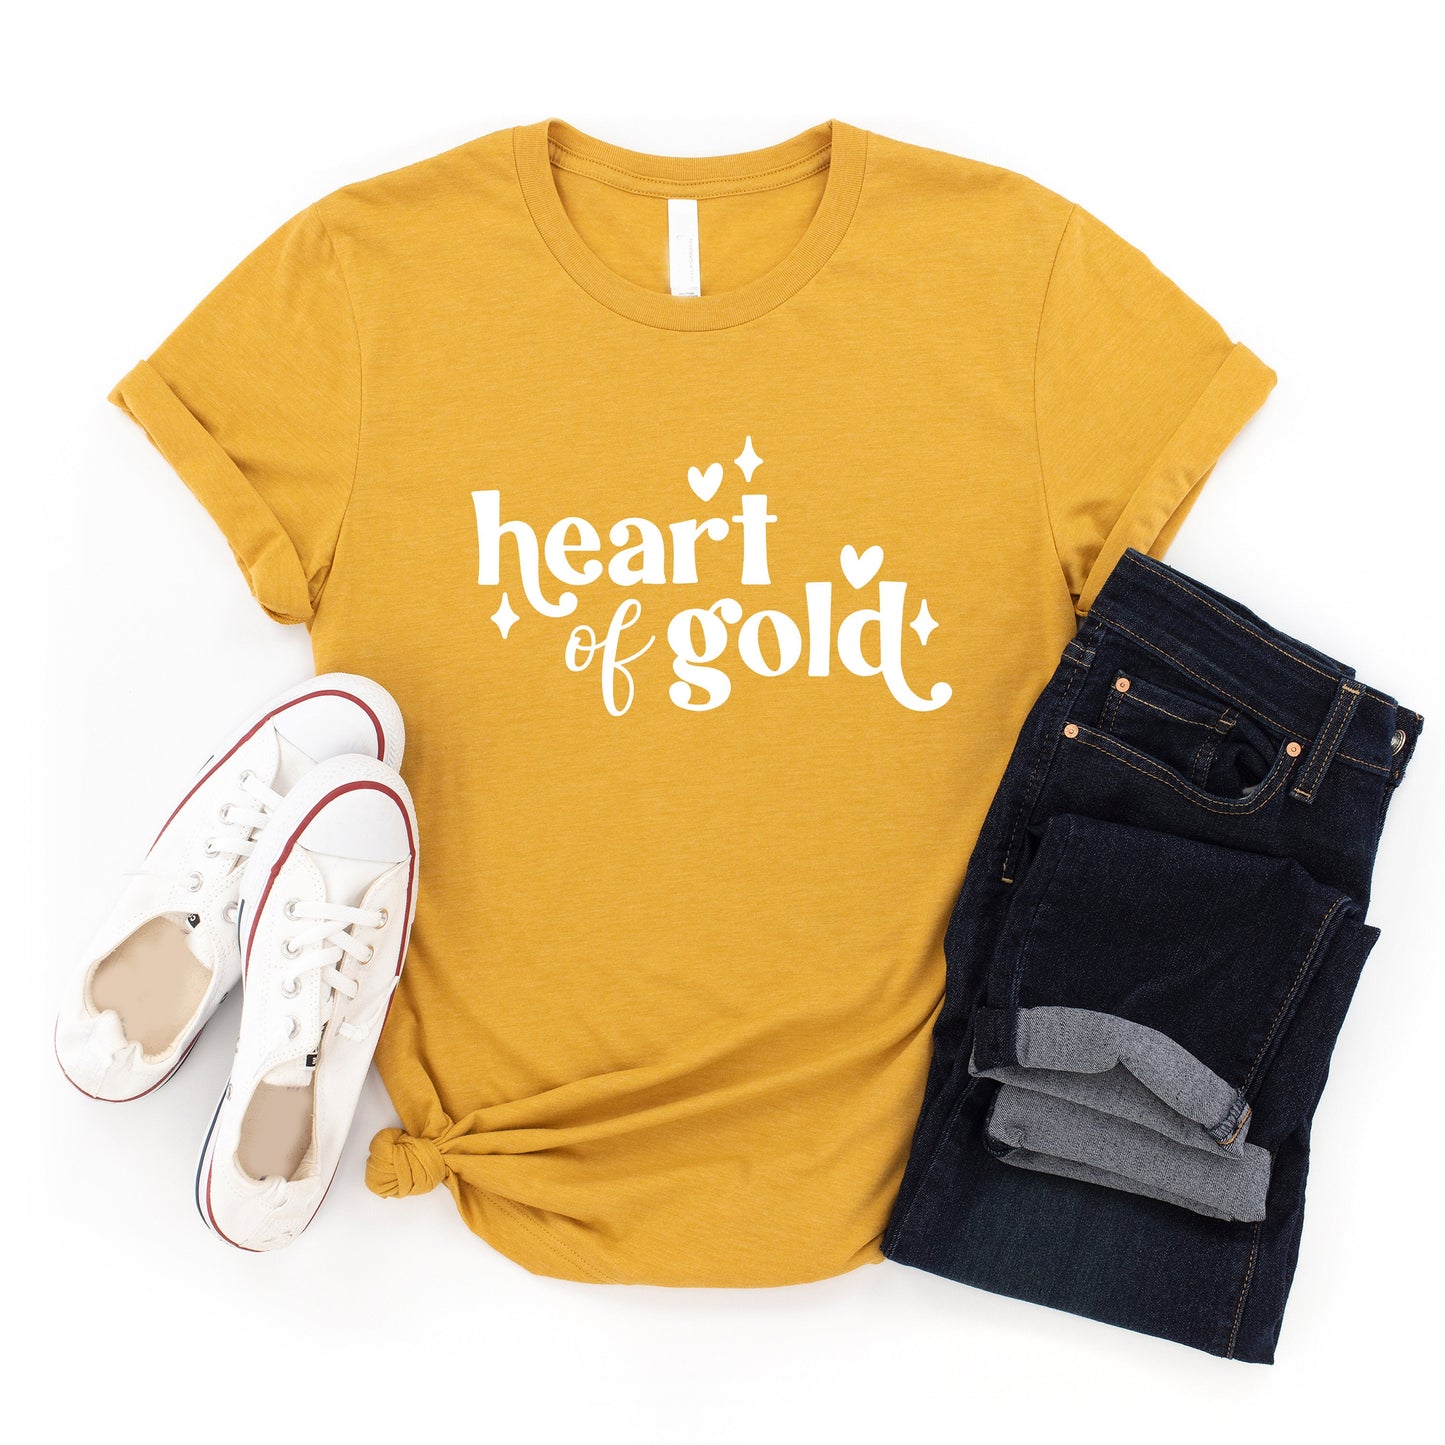 Heart of Gold Shirt